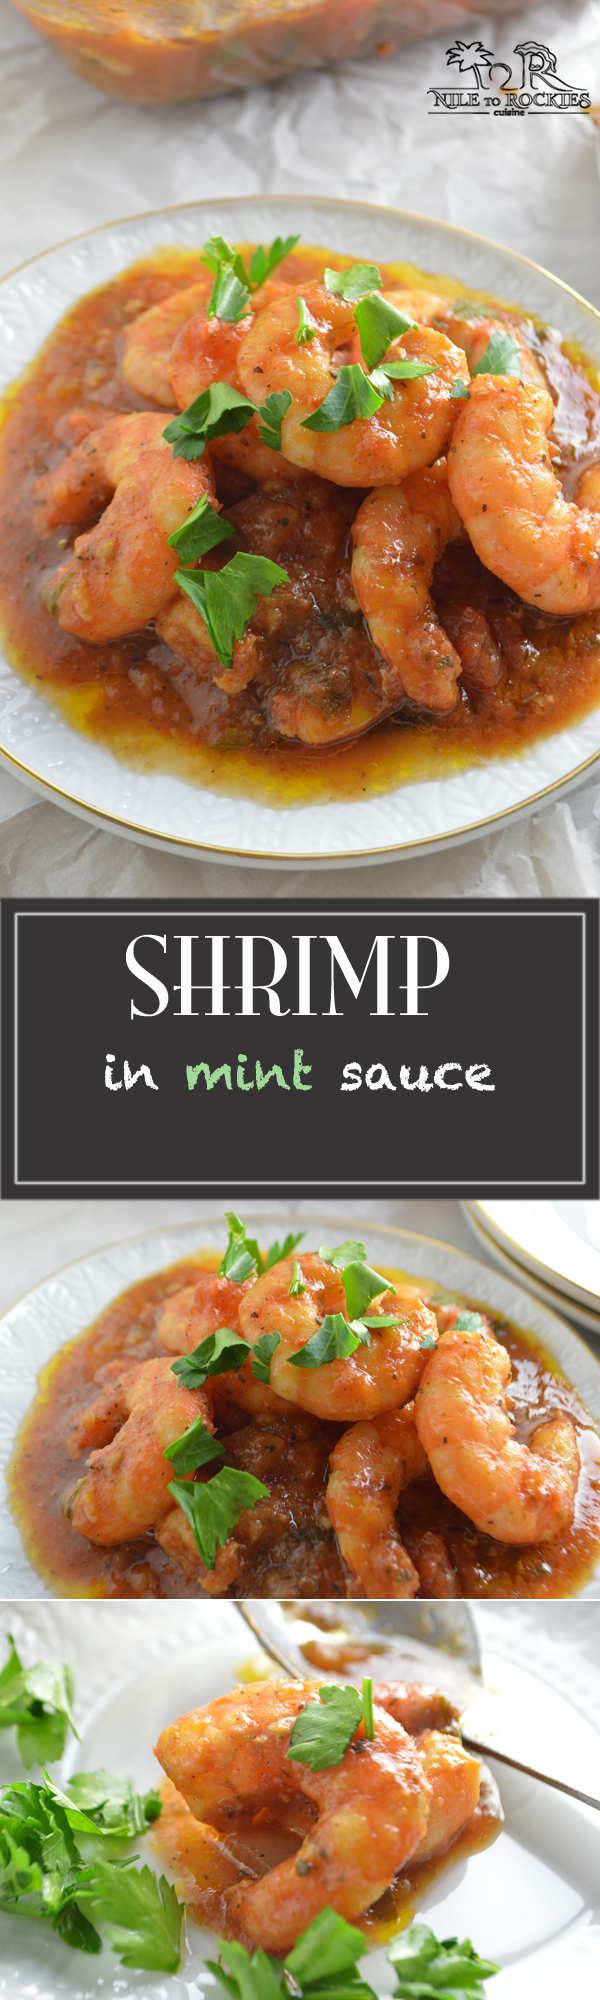 Easy healthy shrimp recipe